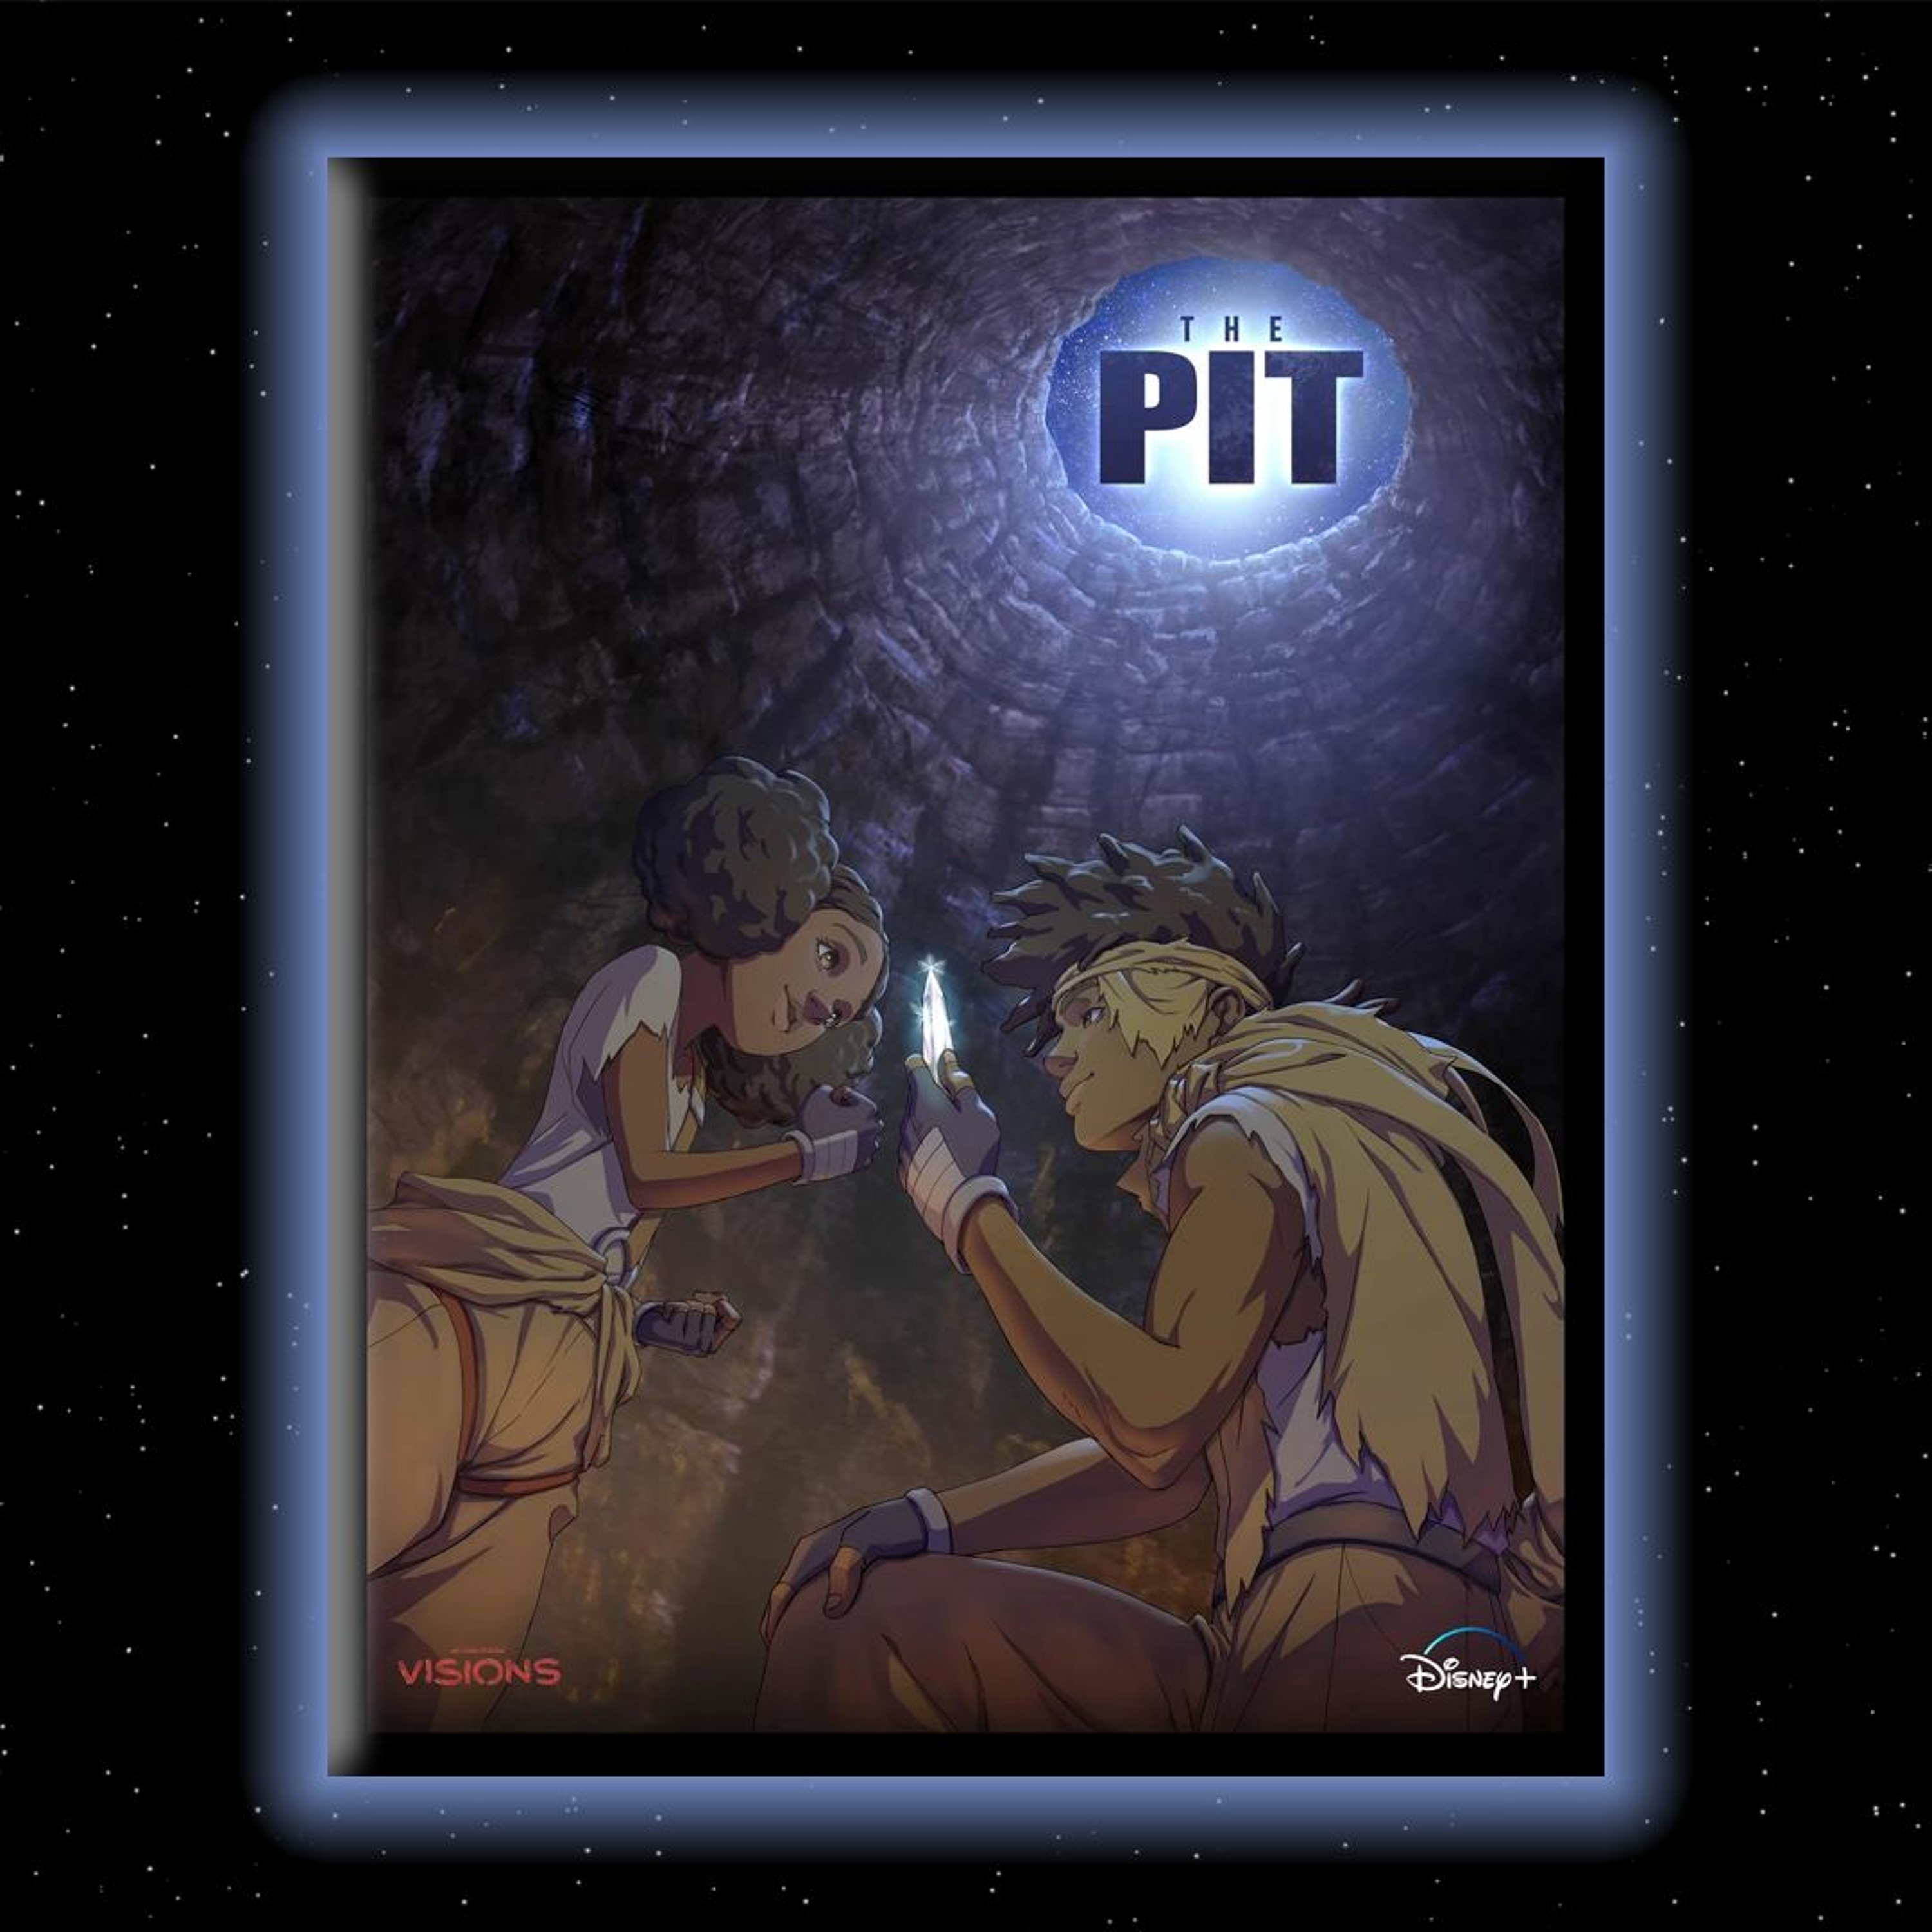 Visions S2E8: The Pit by D’ART Shtajio & Lucasfilm Ltd.